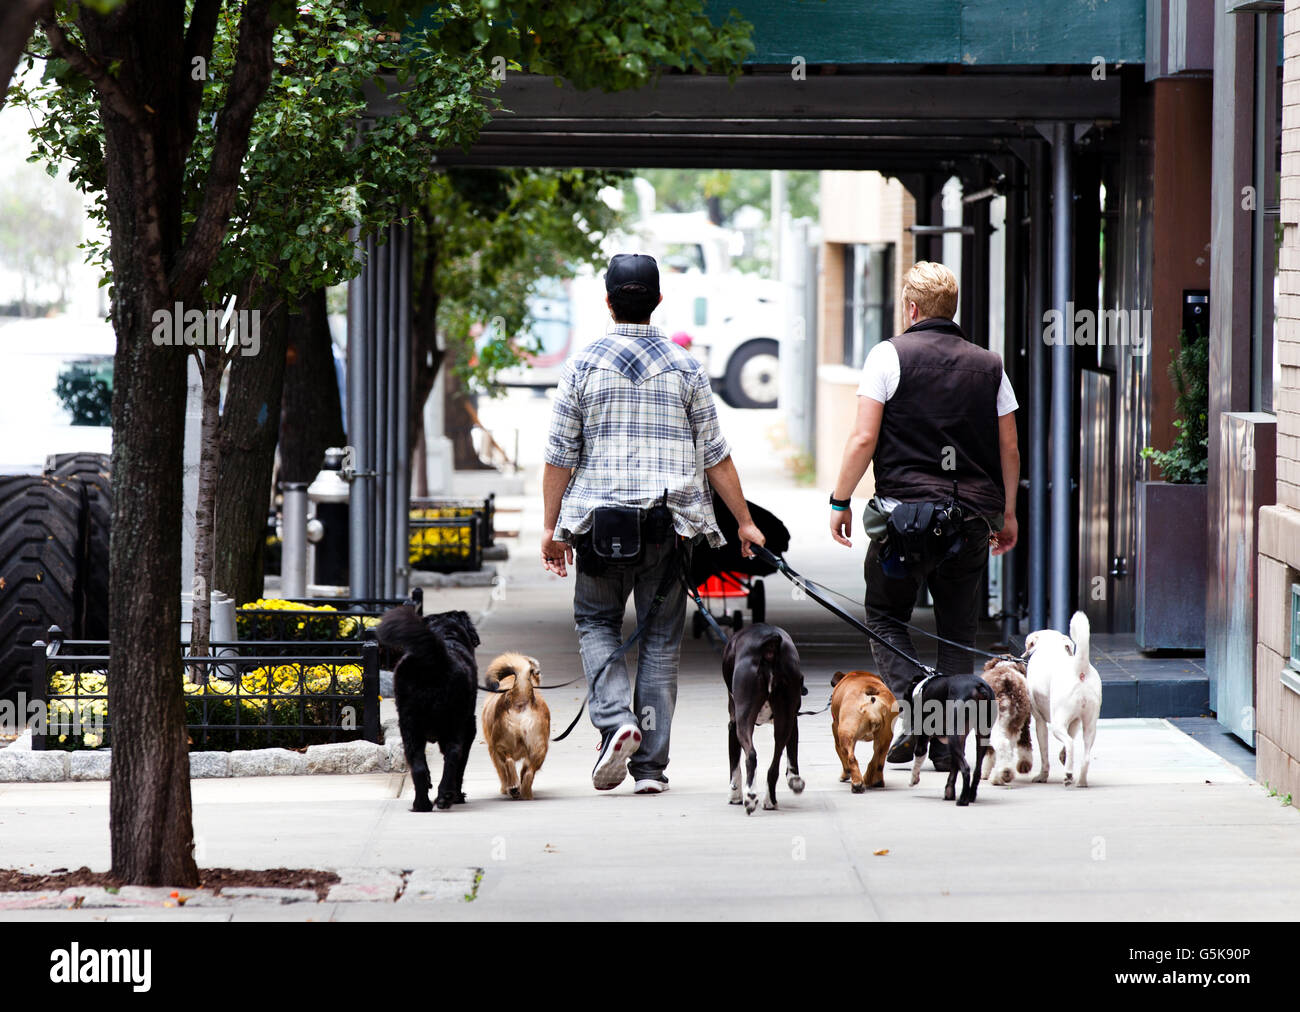 Deux dog walkers qui offrent un service de promenade de chien prendre un grand groupe de chiens pour leur promenade quotidienne dans la région de Greenwich Village de Manhattan, New York Banque D'Images